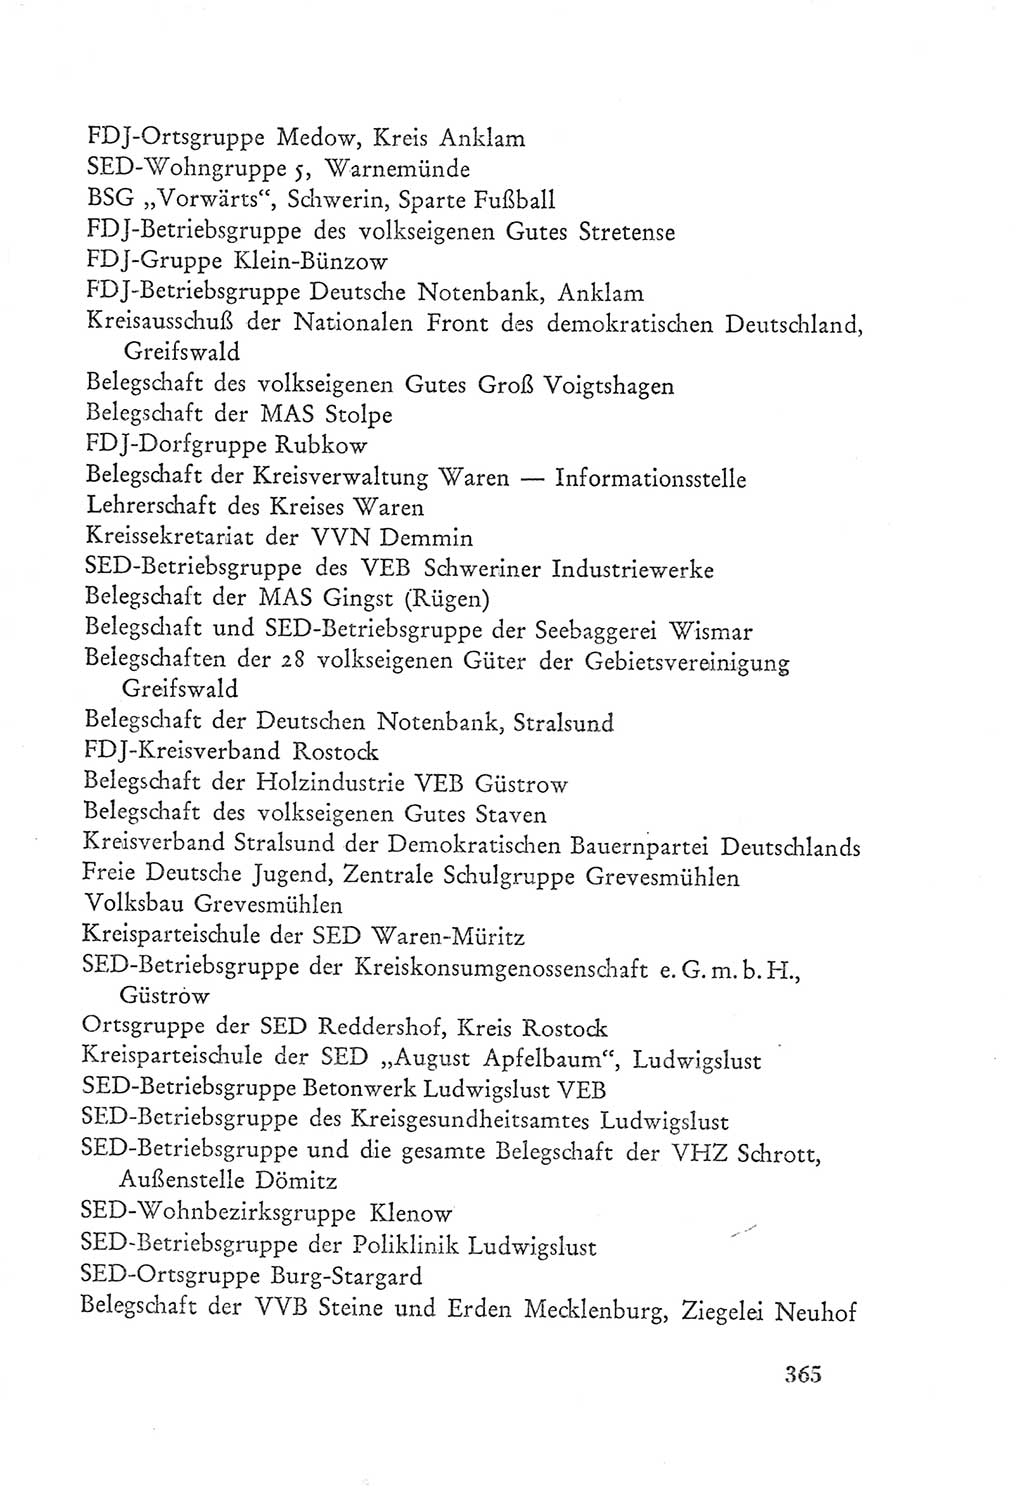 Protokoll der Verhandlungen des Ⅲ. Parteitages der Sozialistischen Einheitspartei Deutschlands (SED) [Deutsche Demokratische Republik (DDR)] 1950, Band 2, Seite 365 (Prot. Verh. Ⅲ. PT SED DDR 1950, Bd. 2, S. 365)